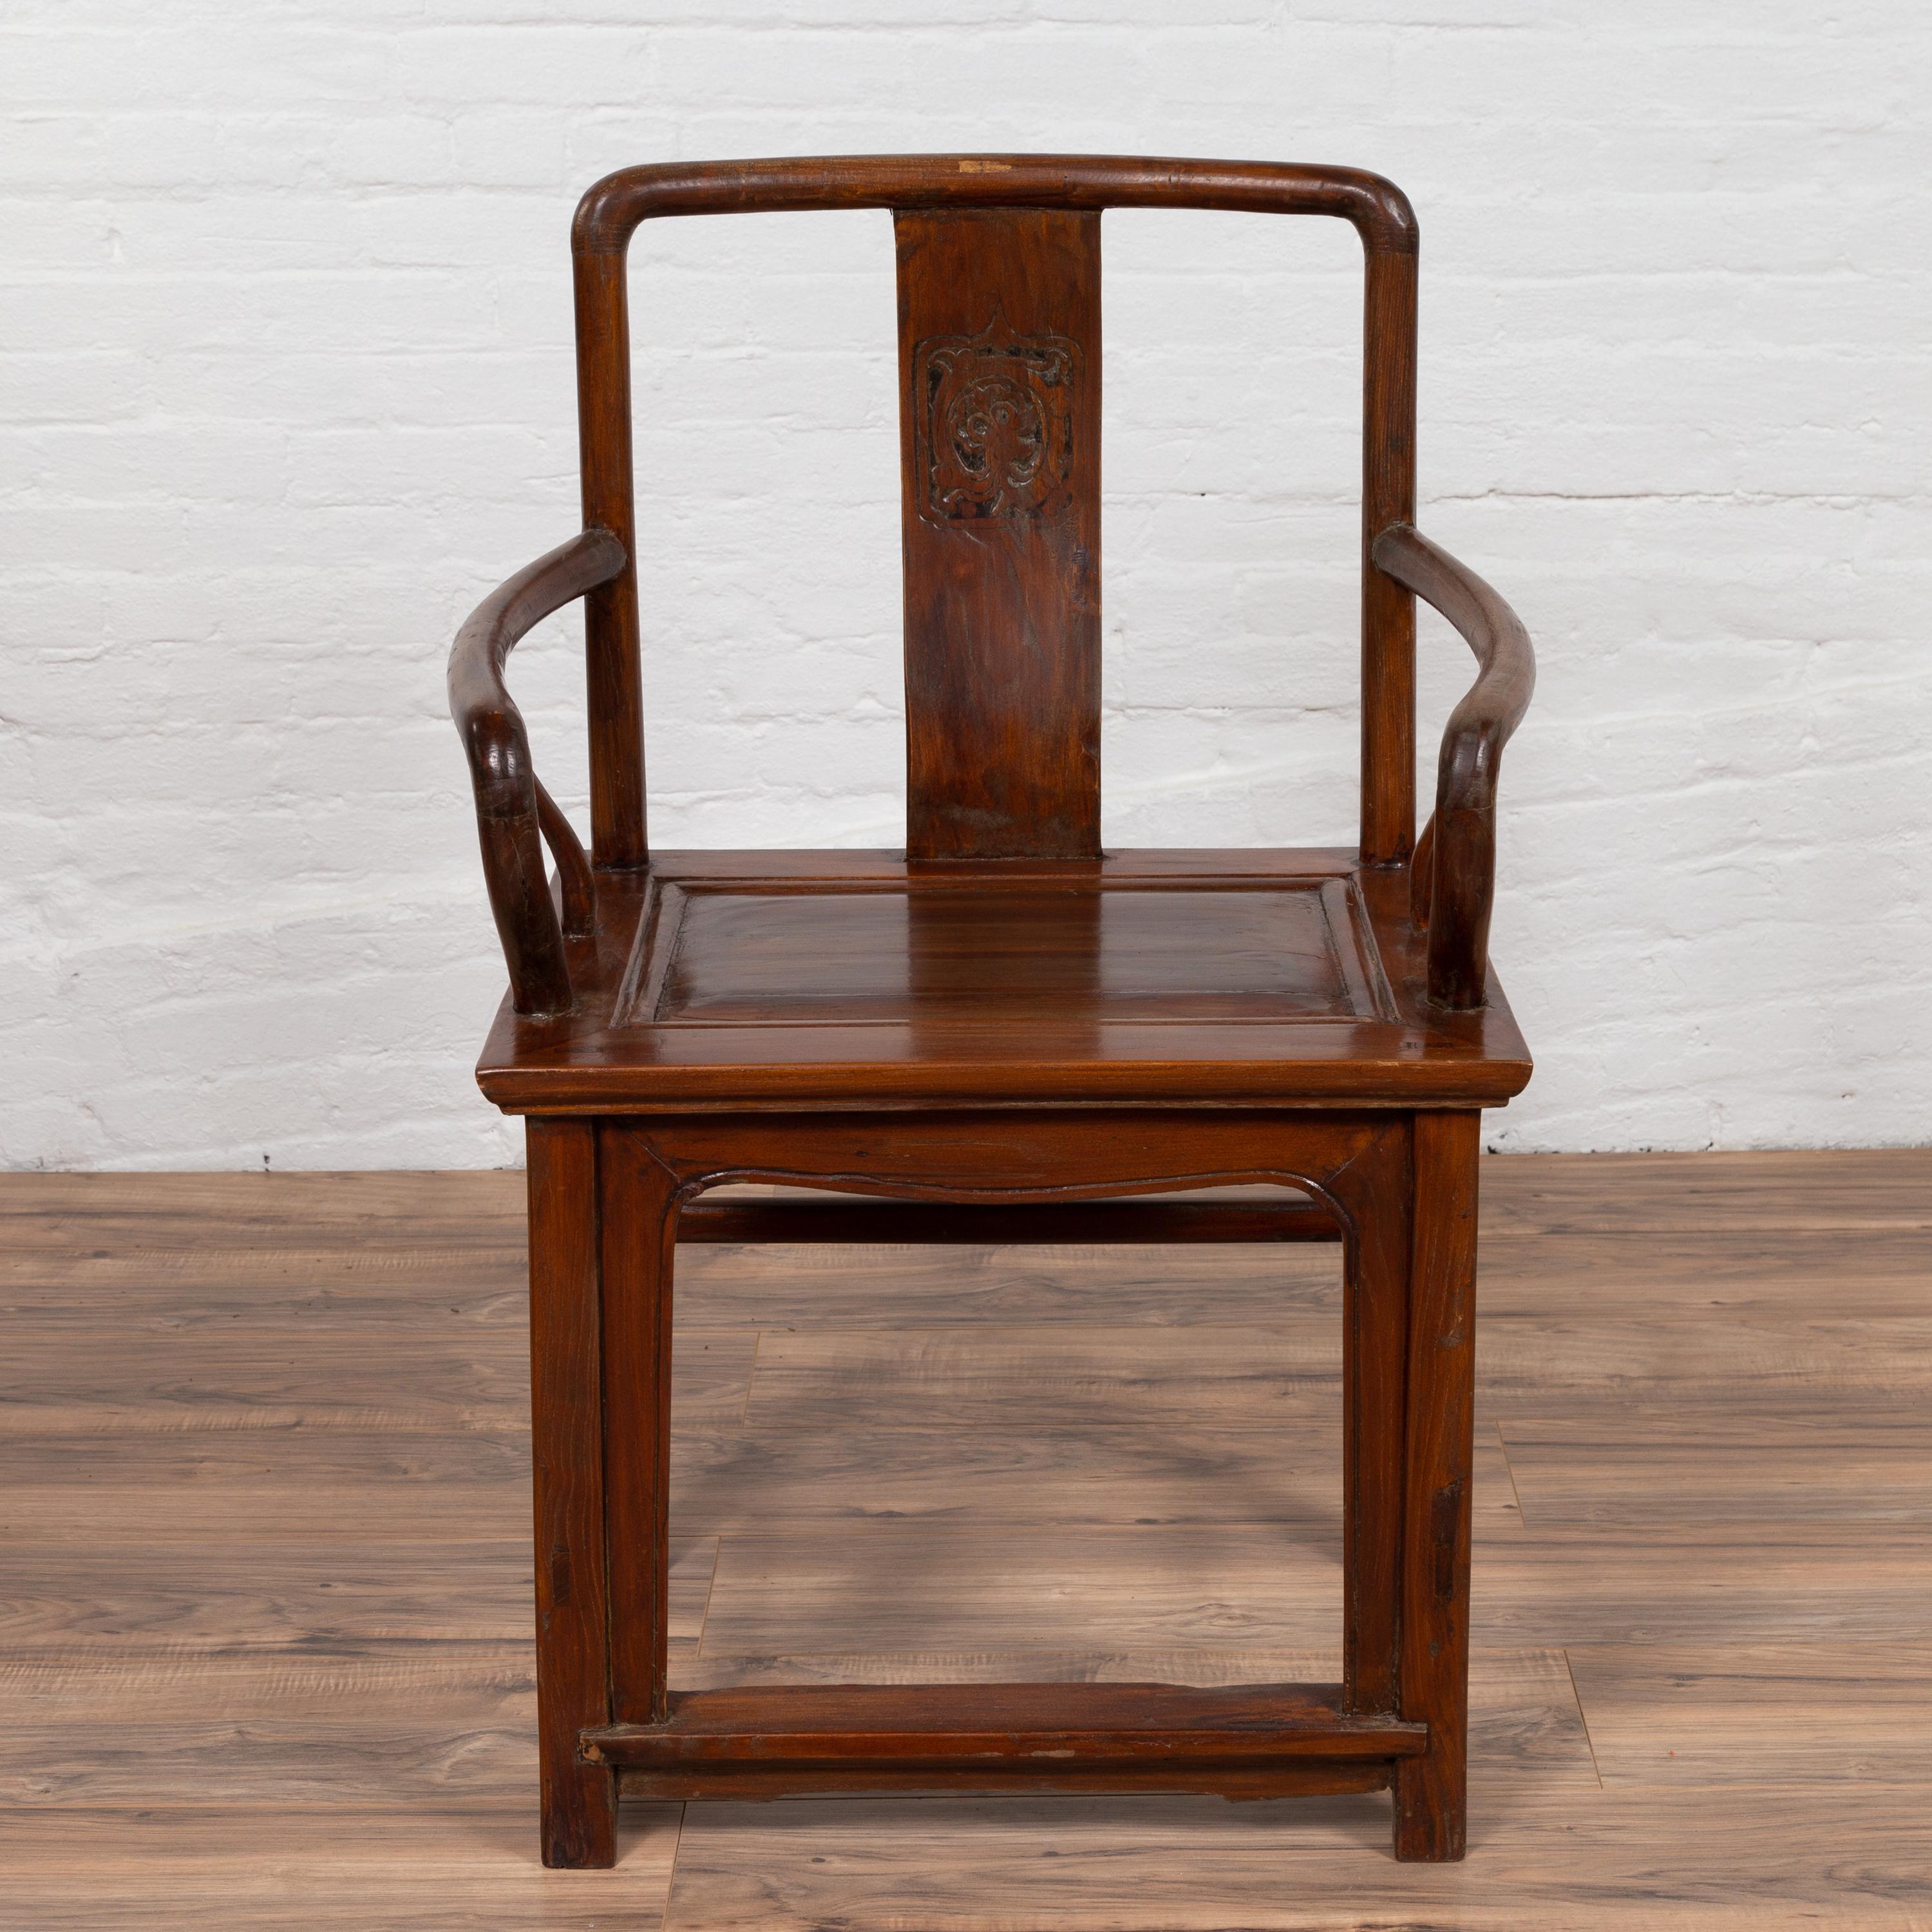 Ein antiker chinesischer Hochzeitsstuhl aus Holz im Stil der Ming-Dynastie aus dem frühen 20. Jahrhundert, mit geschnitztem Medaillon, geschwungenen Armlehnen und natürlicher Holzpatina. Dieser exquisite Sessel, der in den frühen Jahren des 20.